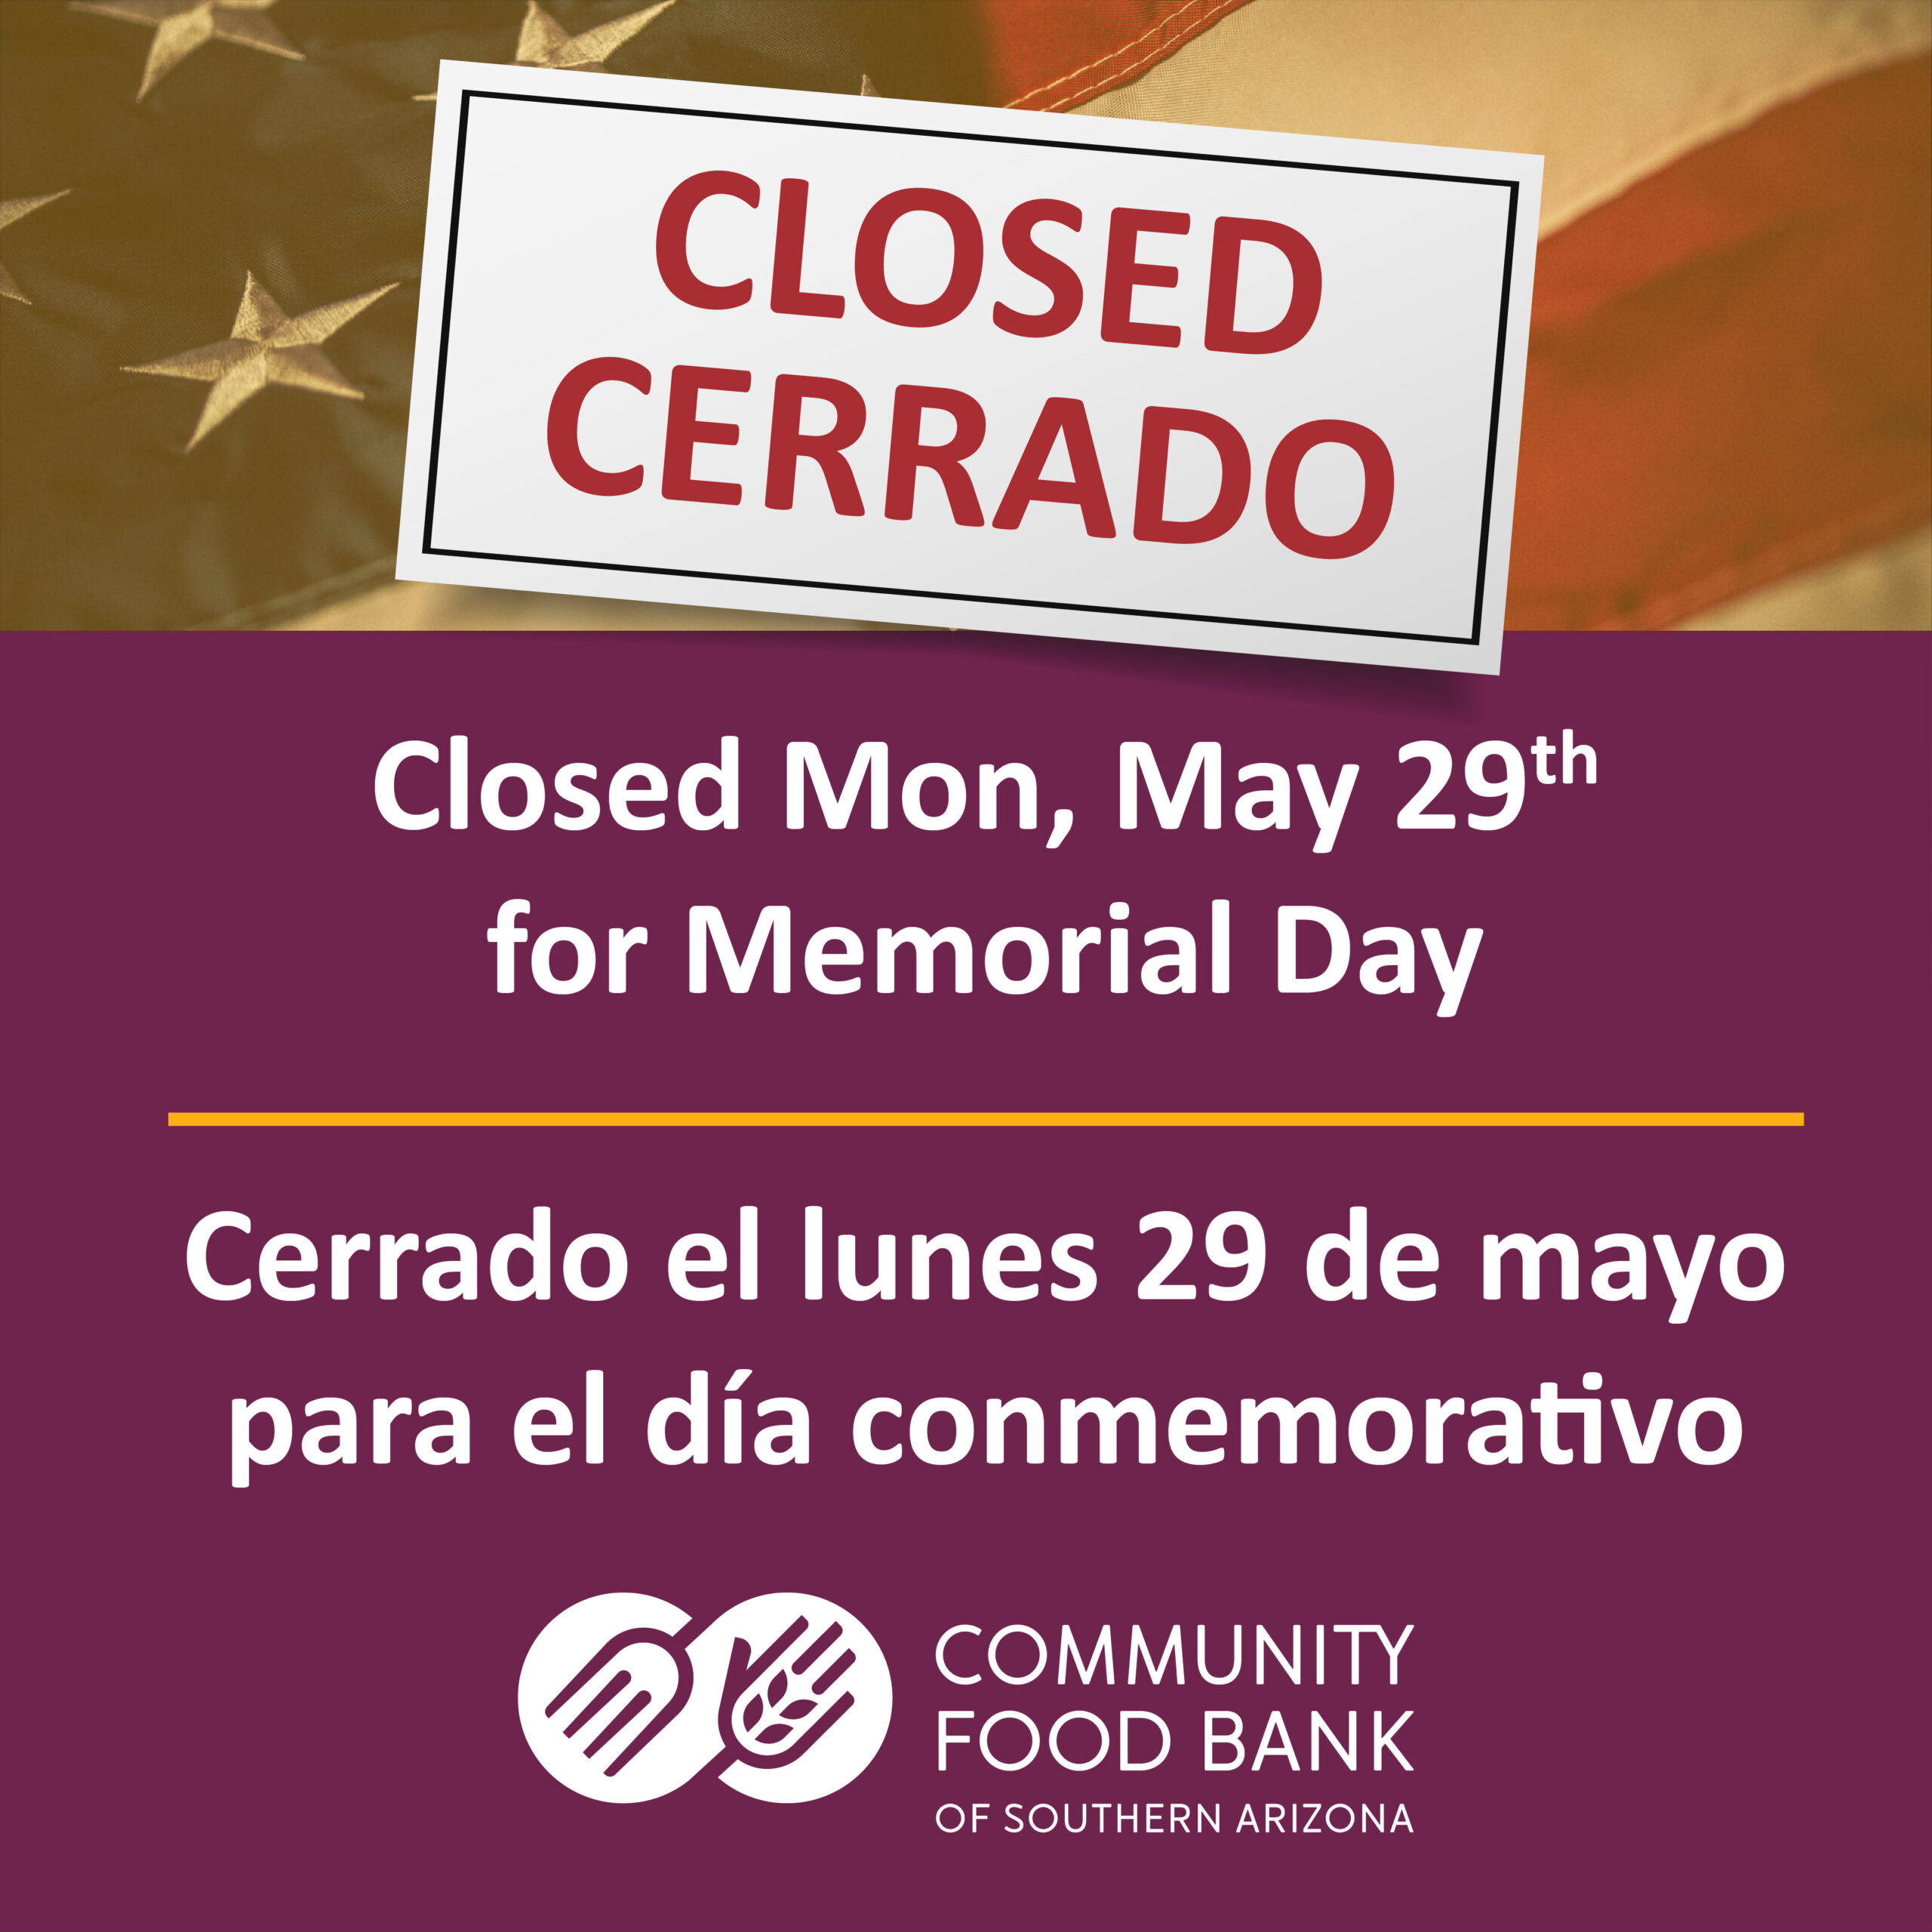 closed Monday May 29th for memorial day. Cerrado el lunes 29 de mayo para el dia conmemorativo